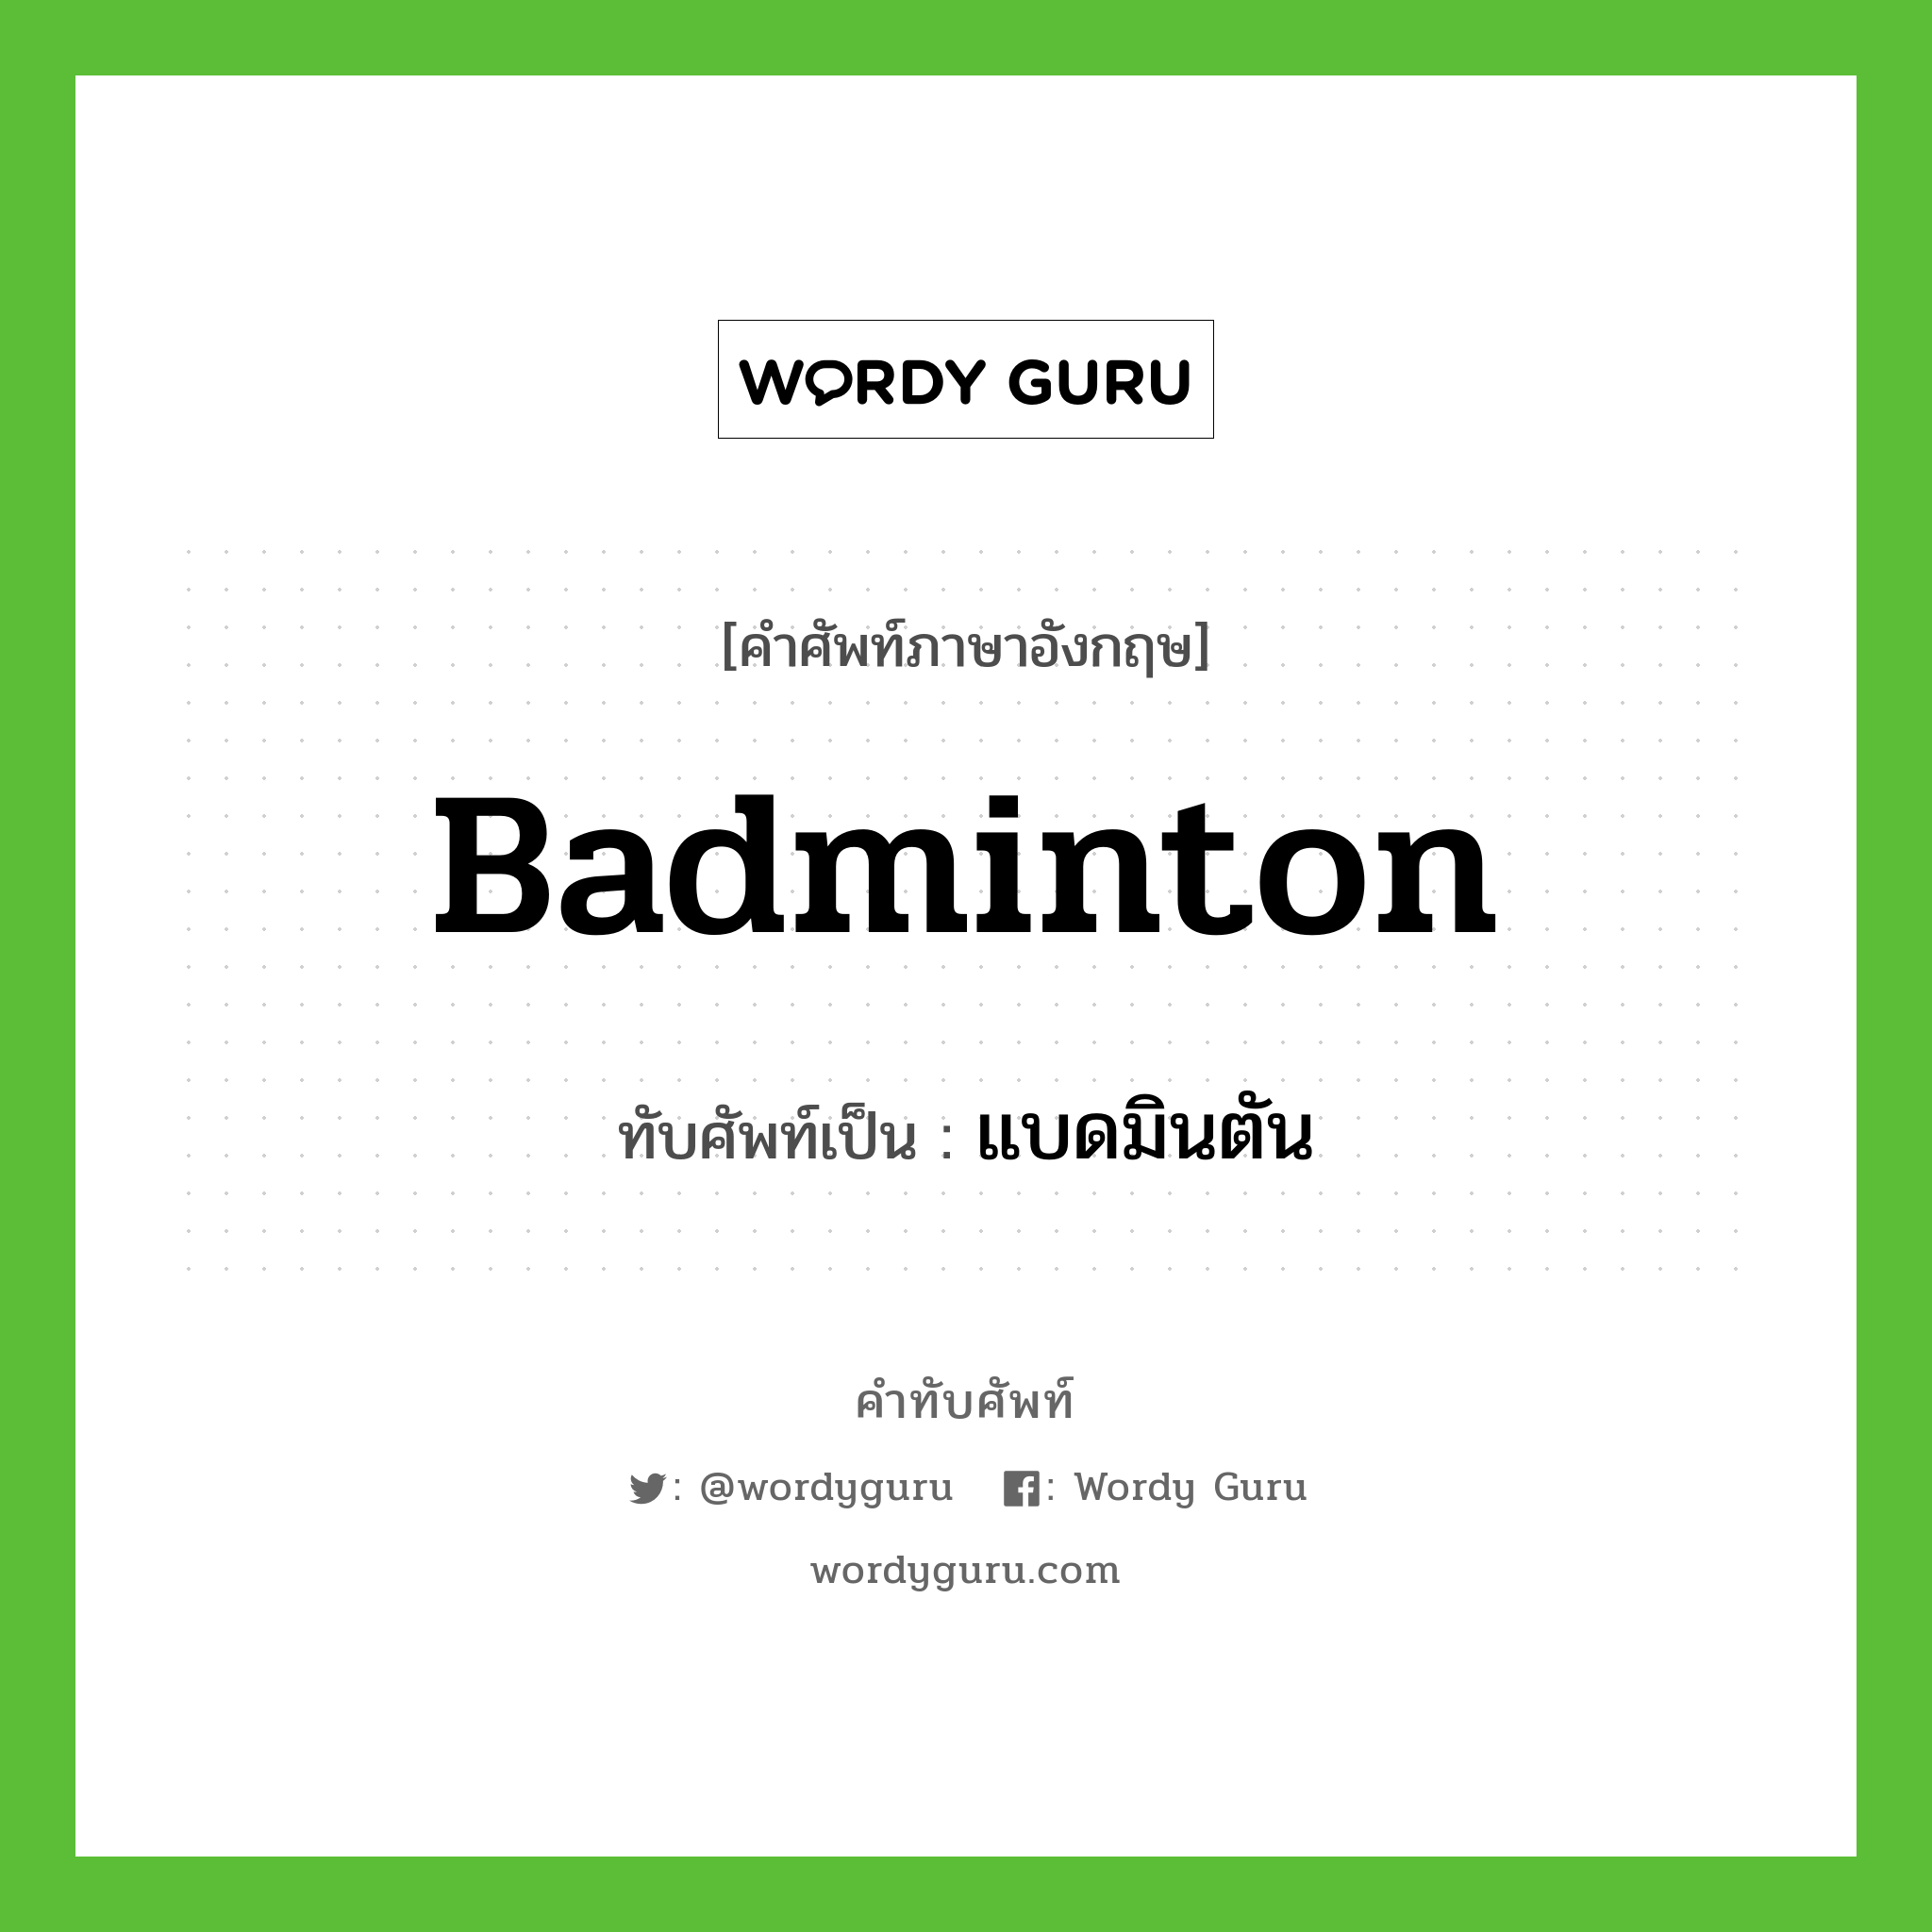 แบดมินตัน เขียนอย่างไร?, คำศัพท์ภาษาอังกฤษ แบดมินตัน ทับศัพท์เป็น badminton